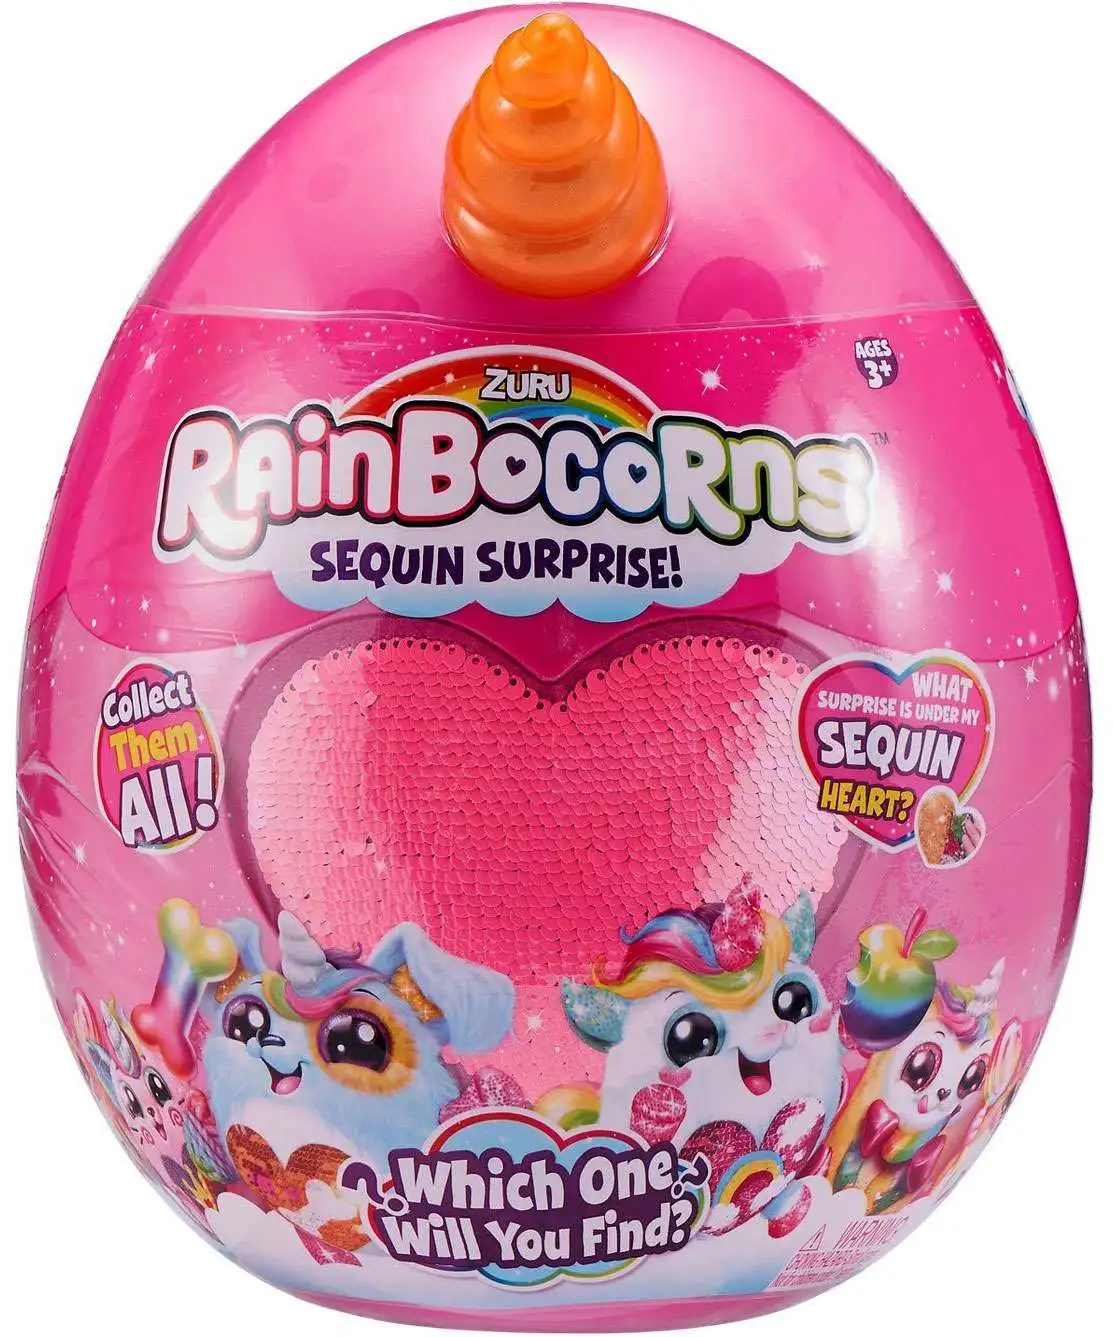 Яйцо с игрушкой купить. Игрушка Zuru Rainbocorns. Игрушка Rainbocorns сюрприз. Rainbocorns игрушка яйцо. Rainbocorns игрушка яйцо с единорогом.